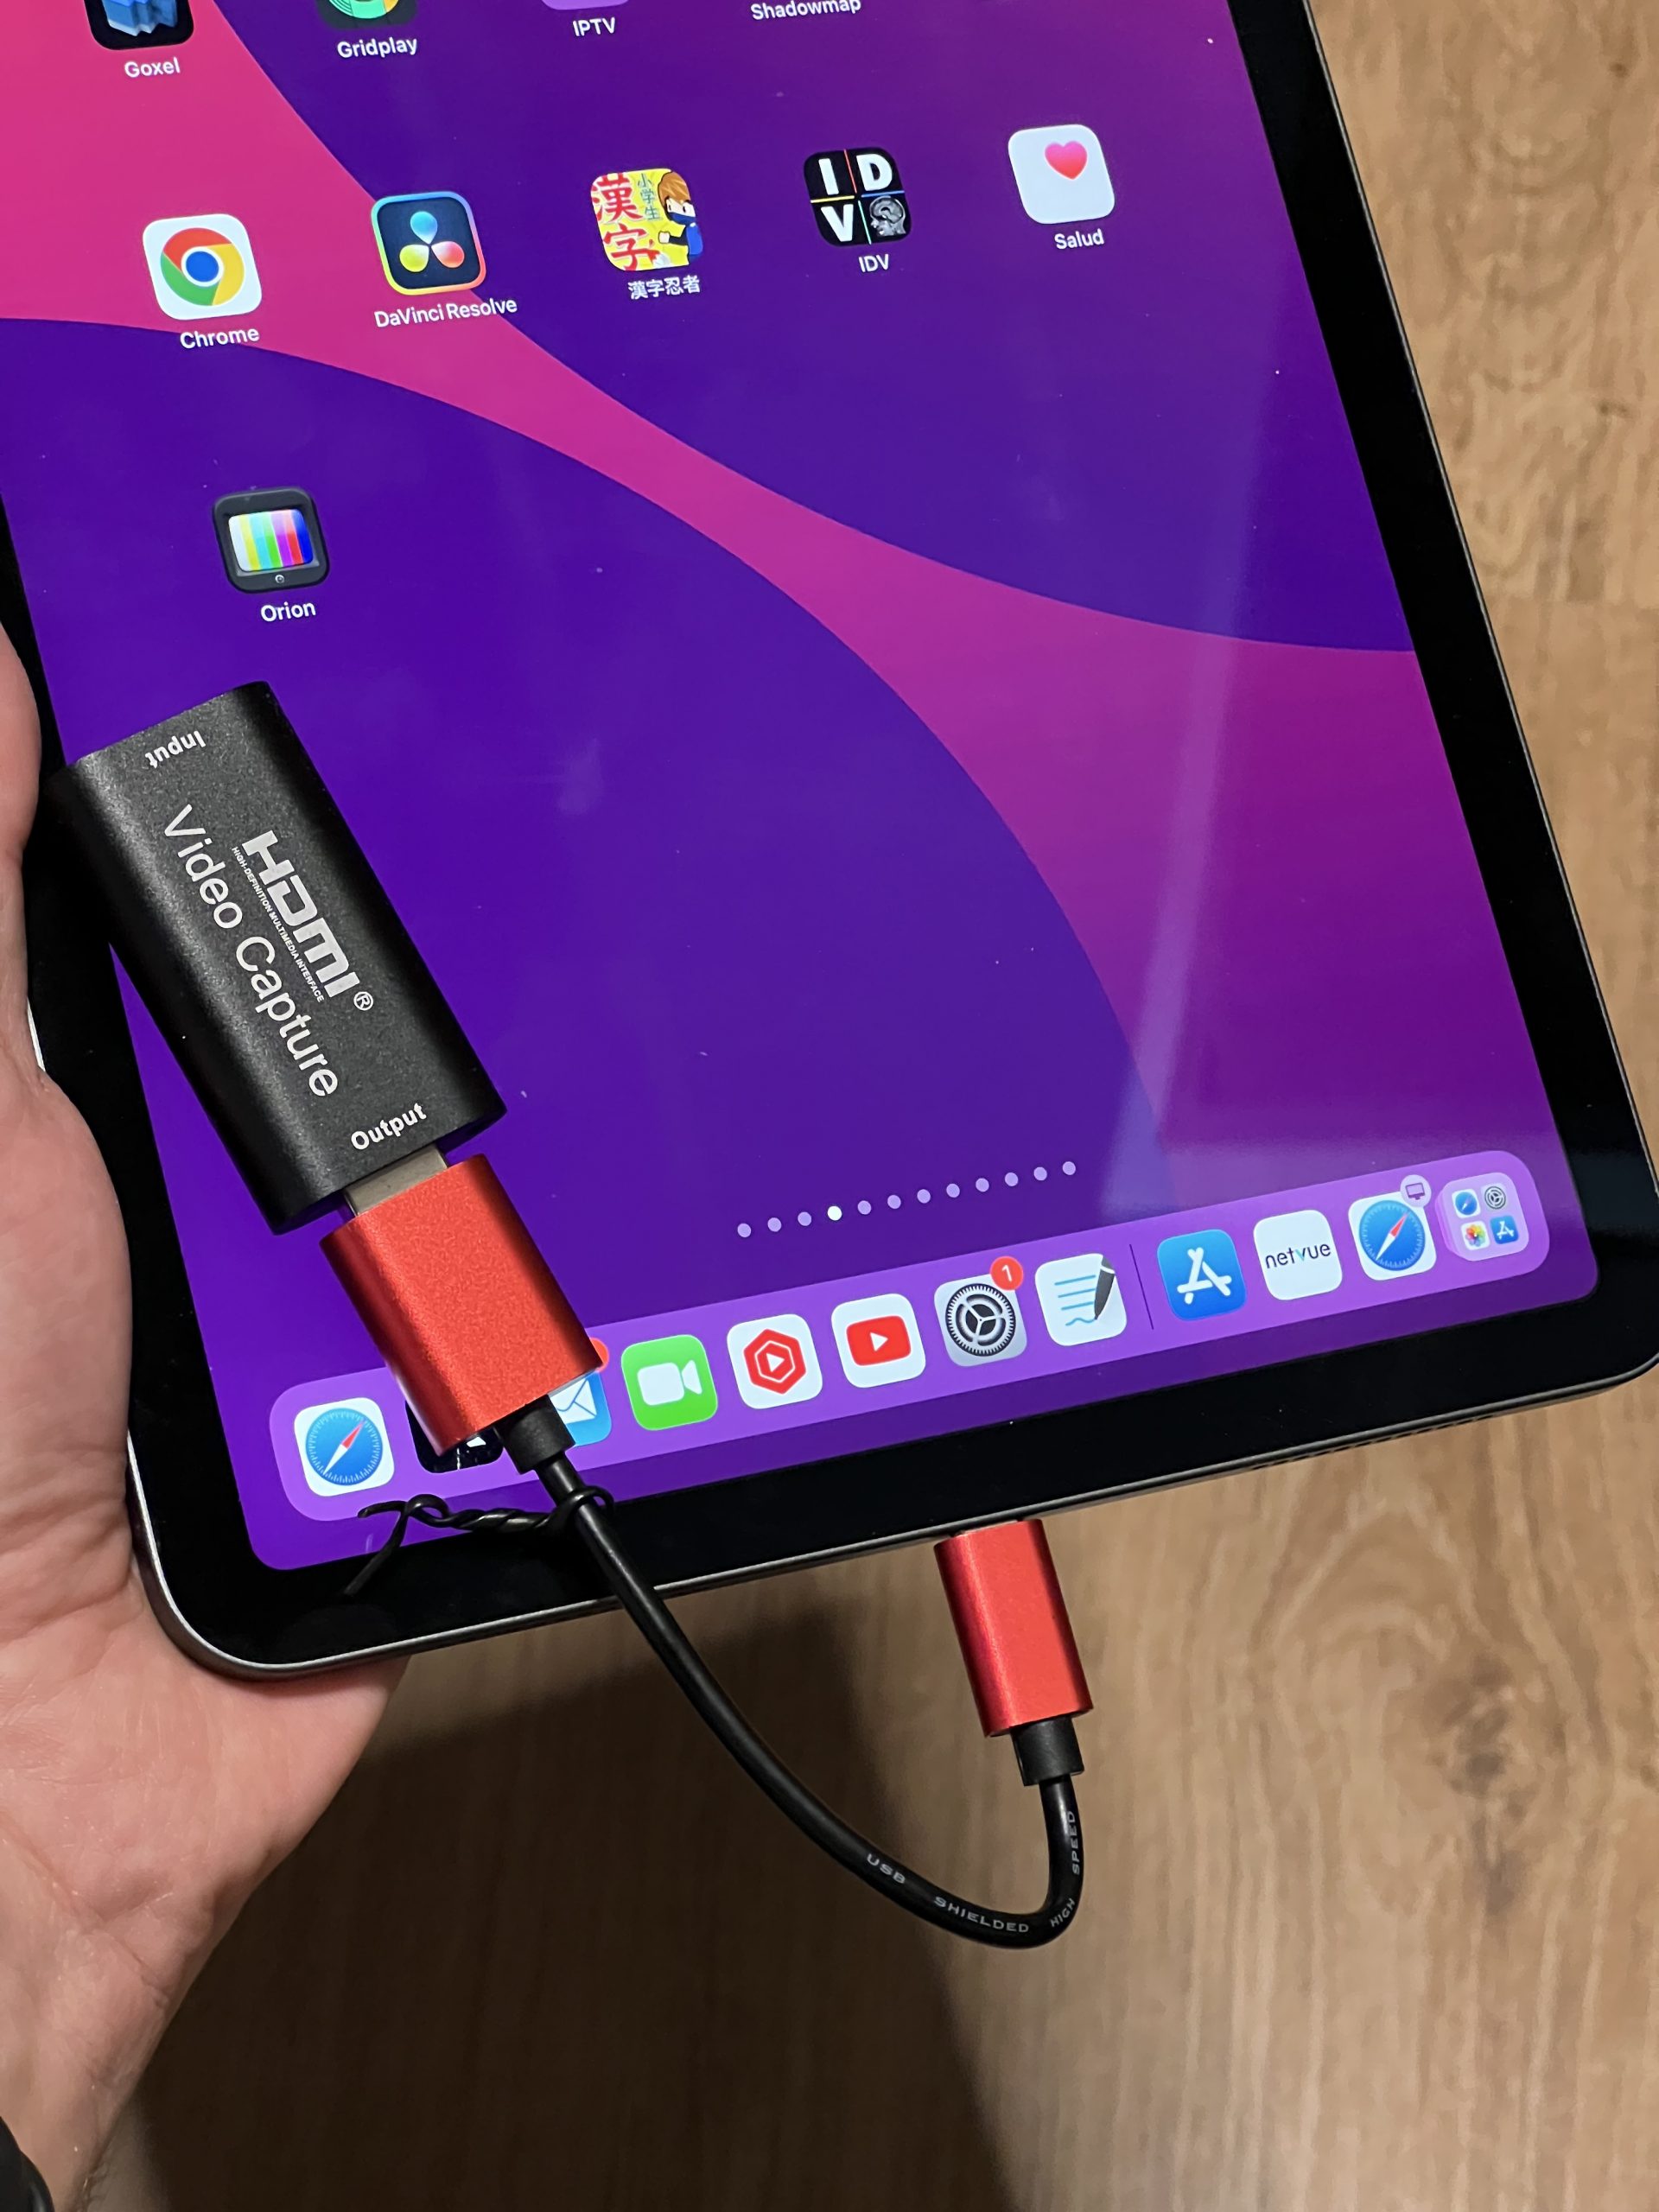 Capturadora HDMI conectada a un iPad